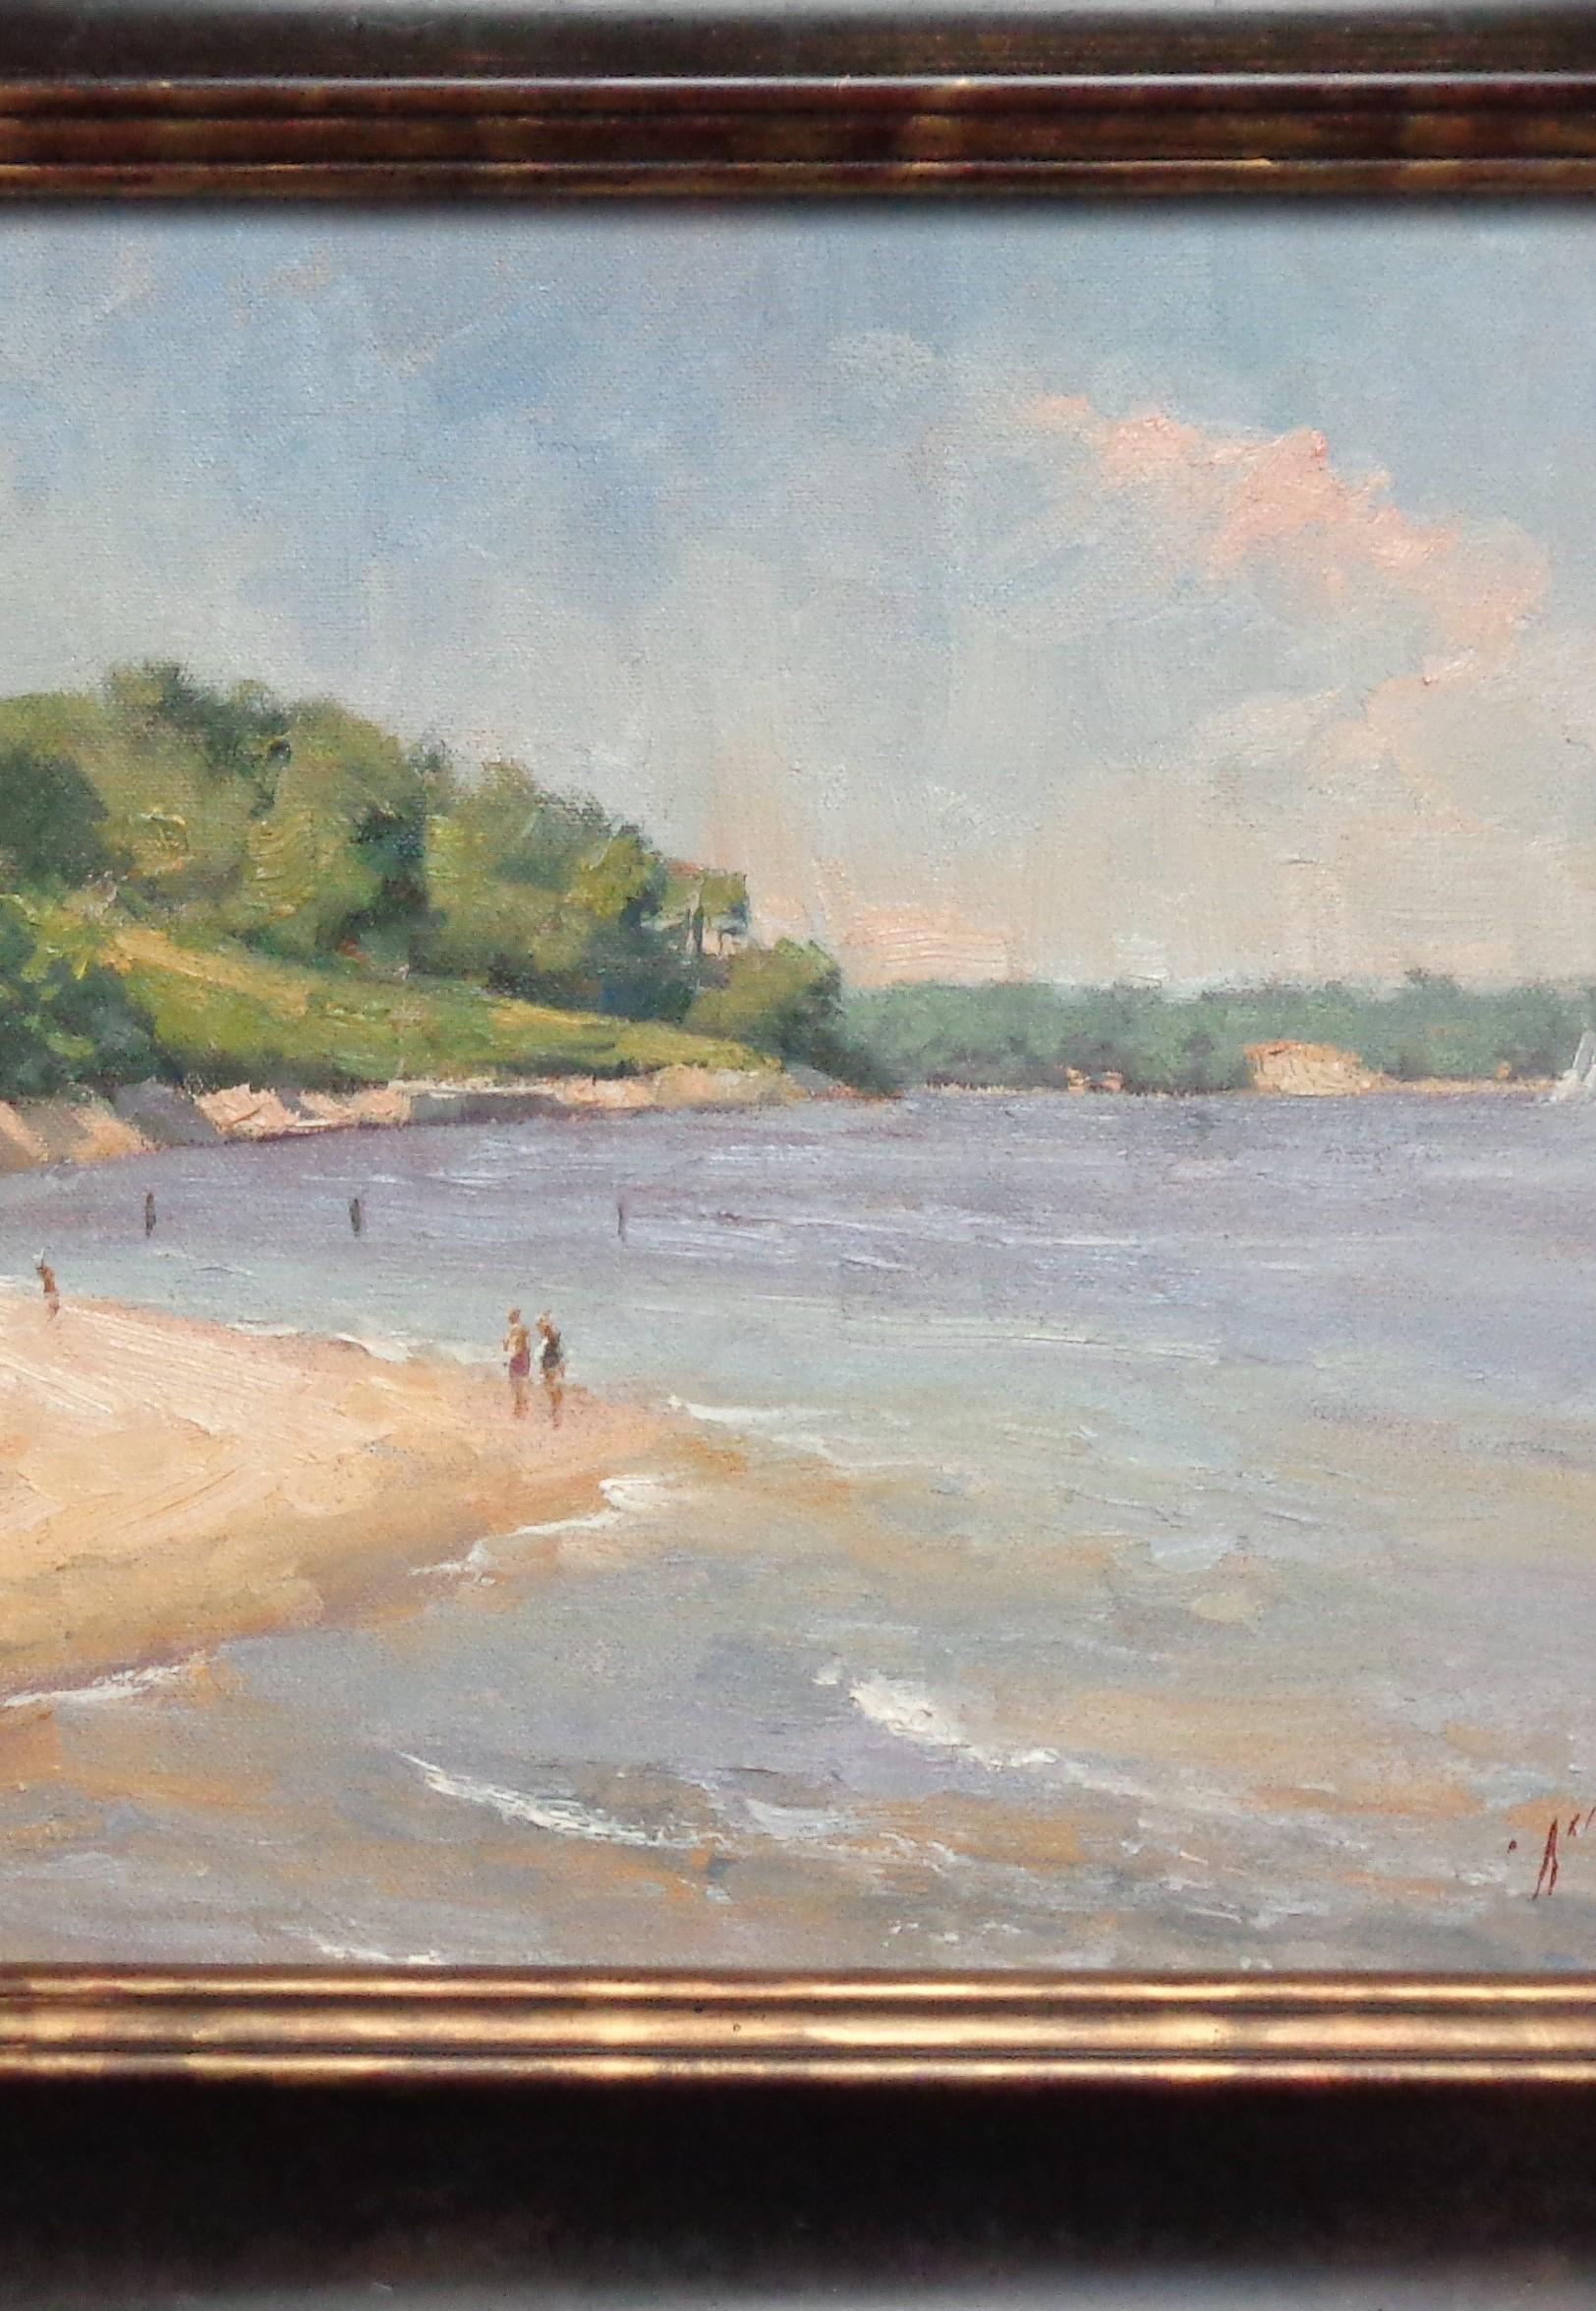  Meereslandschaft, Gemälde des amerikanischen Impressionisten Paul Bachem  – Painting von Michael Budden